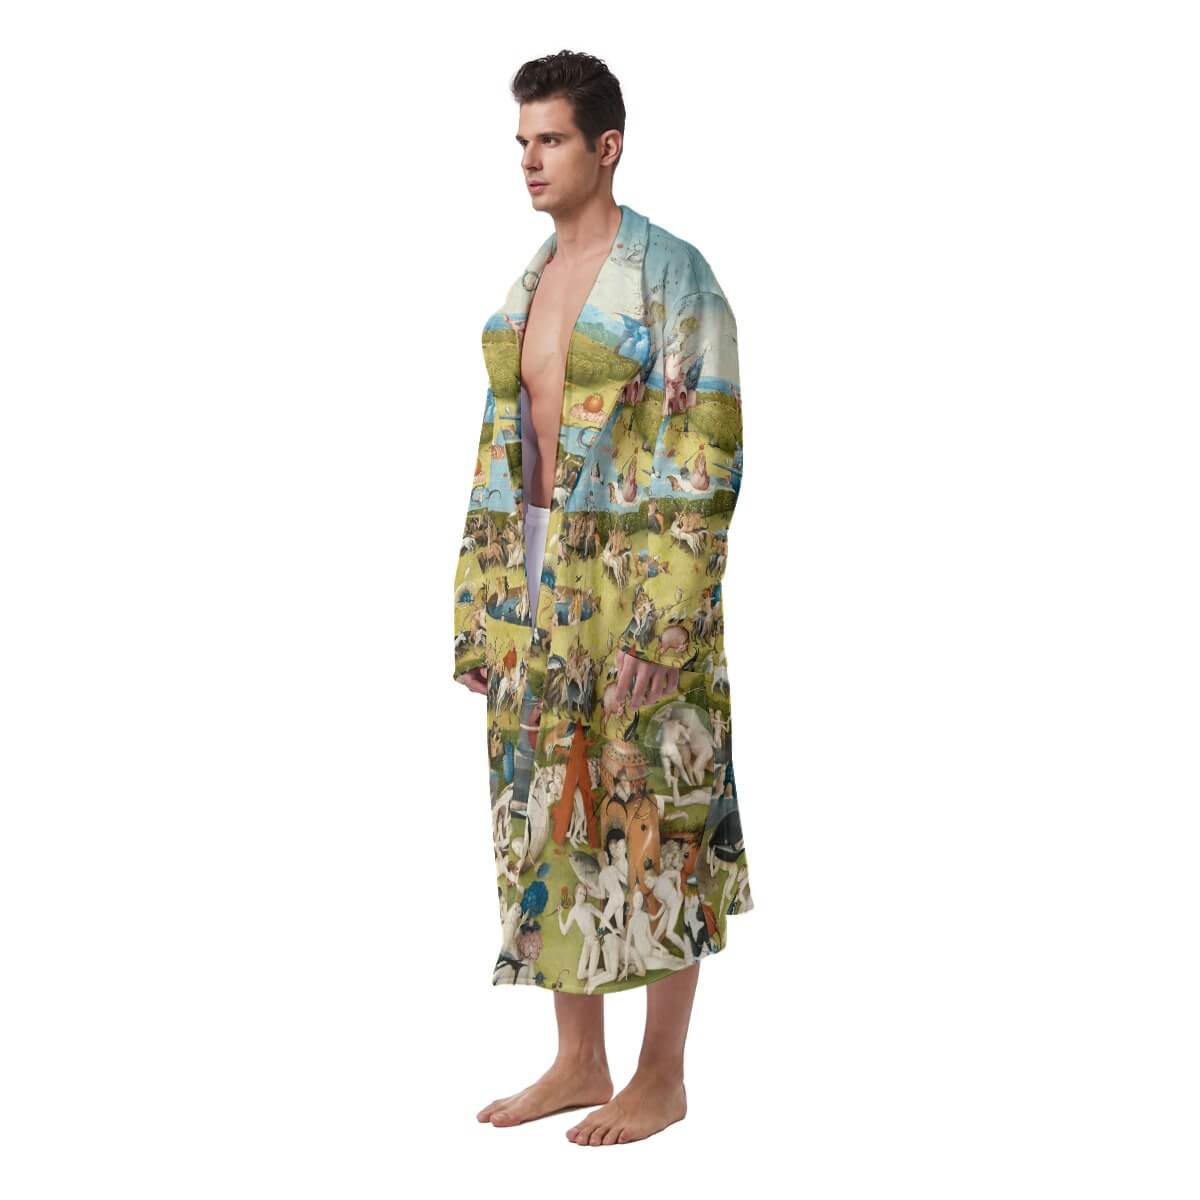 Luxury Fleece Bathrobe - Stylish and Comfortable